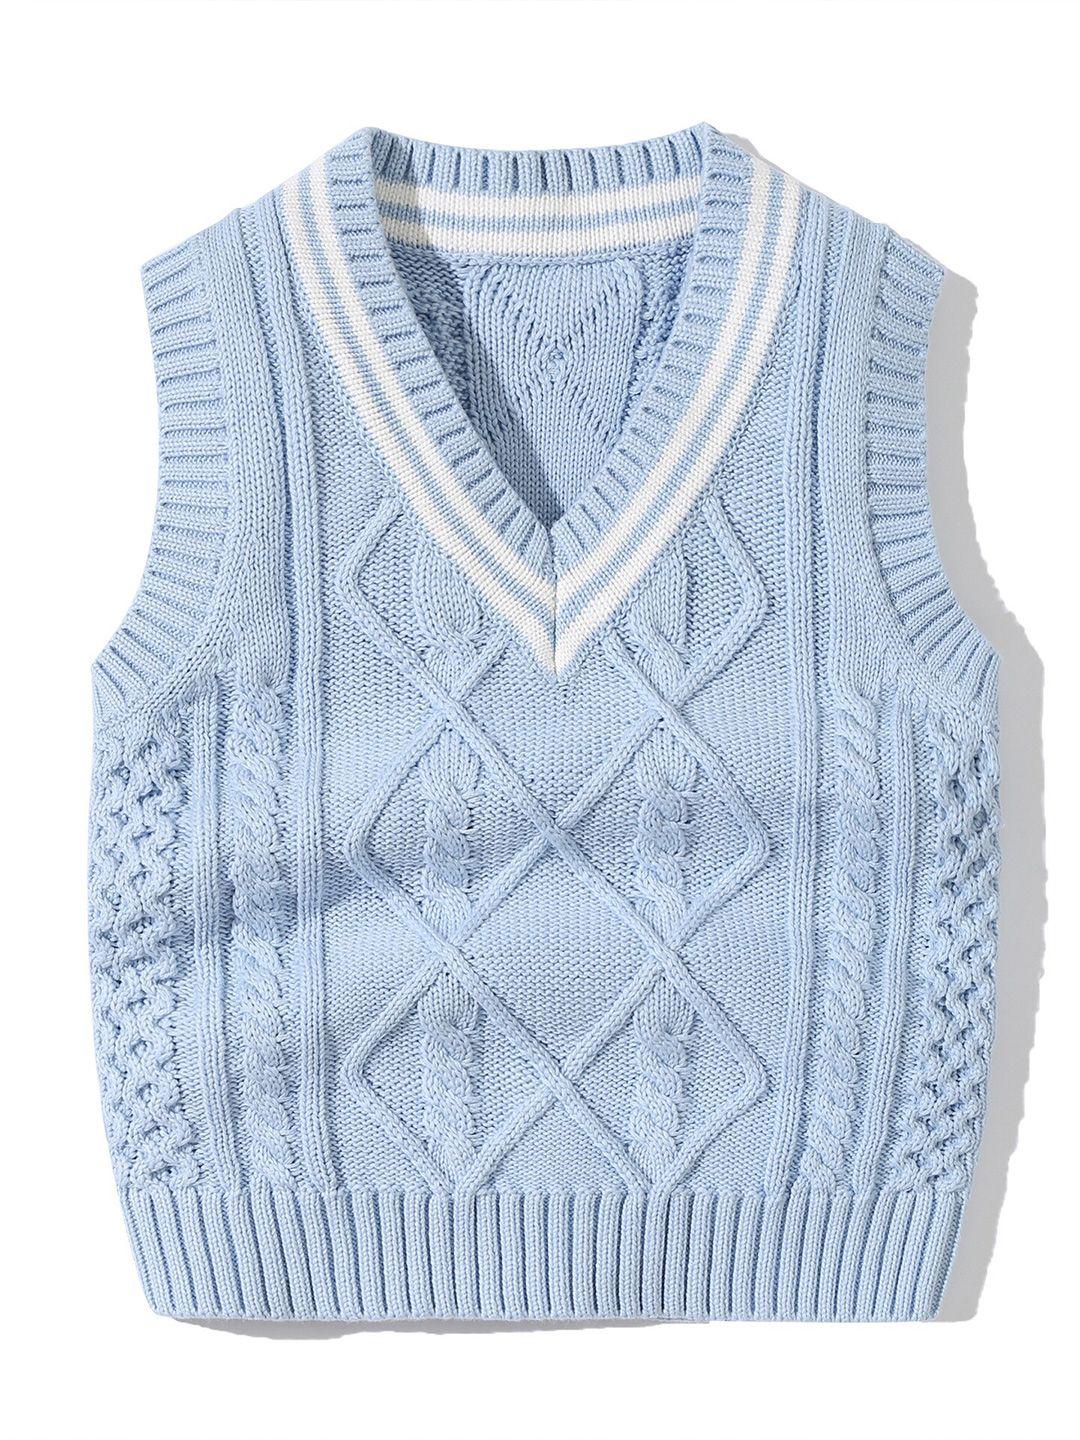 stylecast kids blue cable knit self design v-neck sleeveless ribbed cotton sweater vest